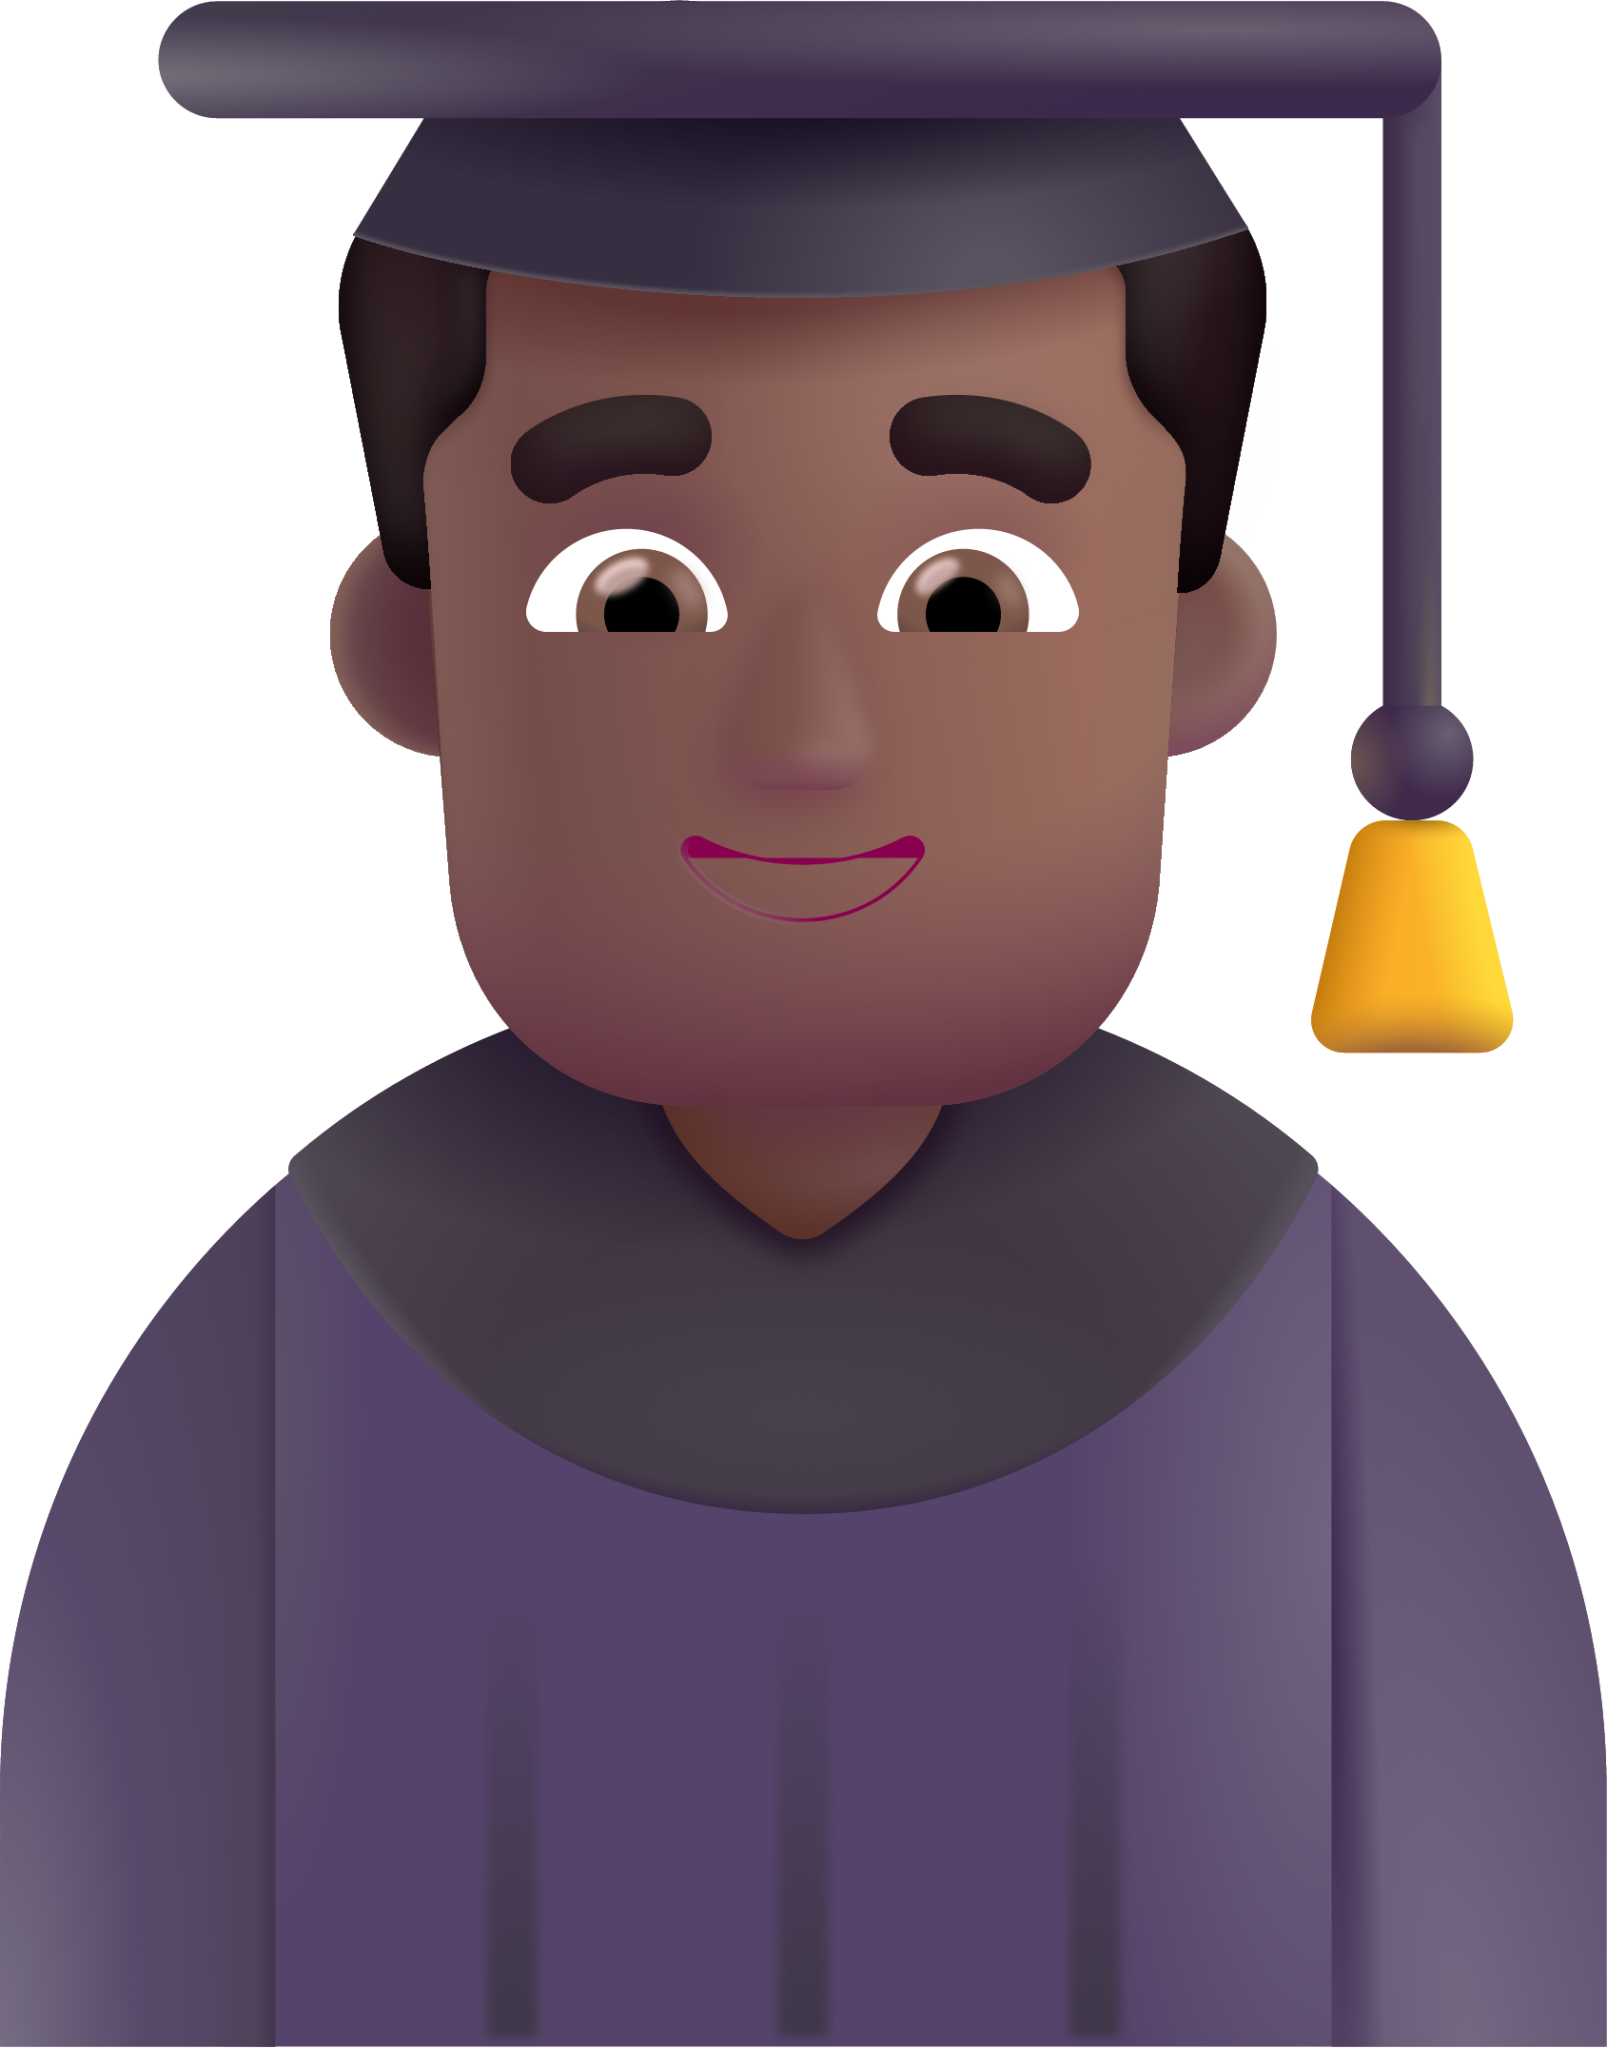 man student medium dark emoji